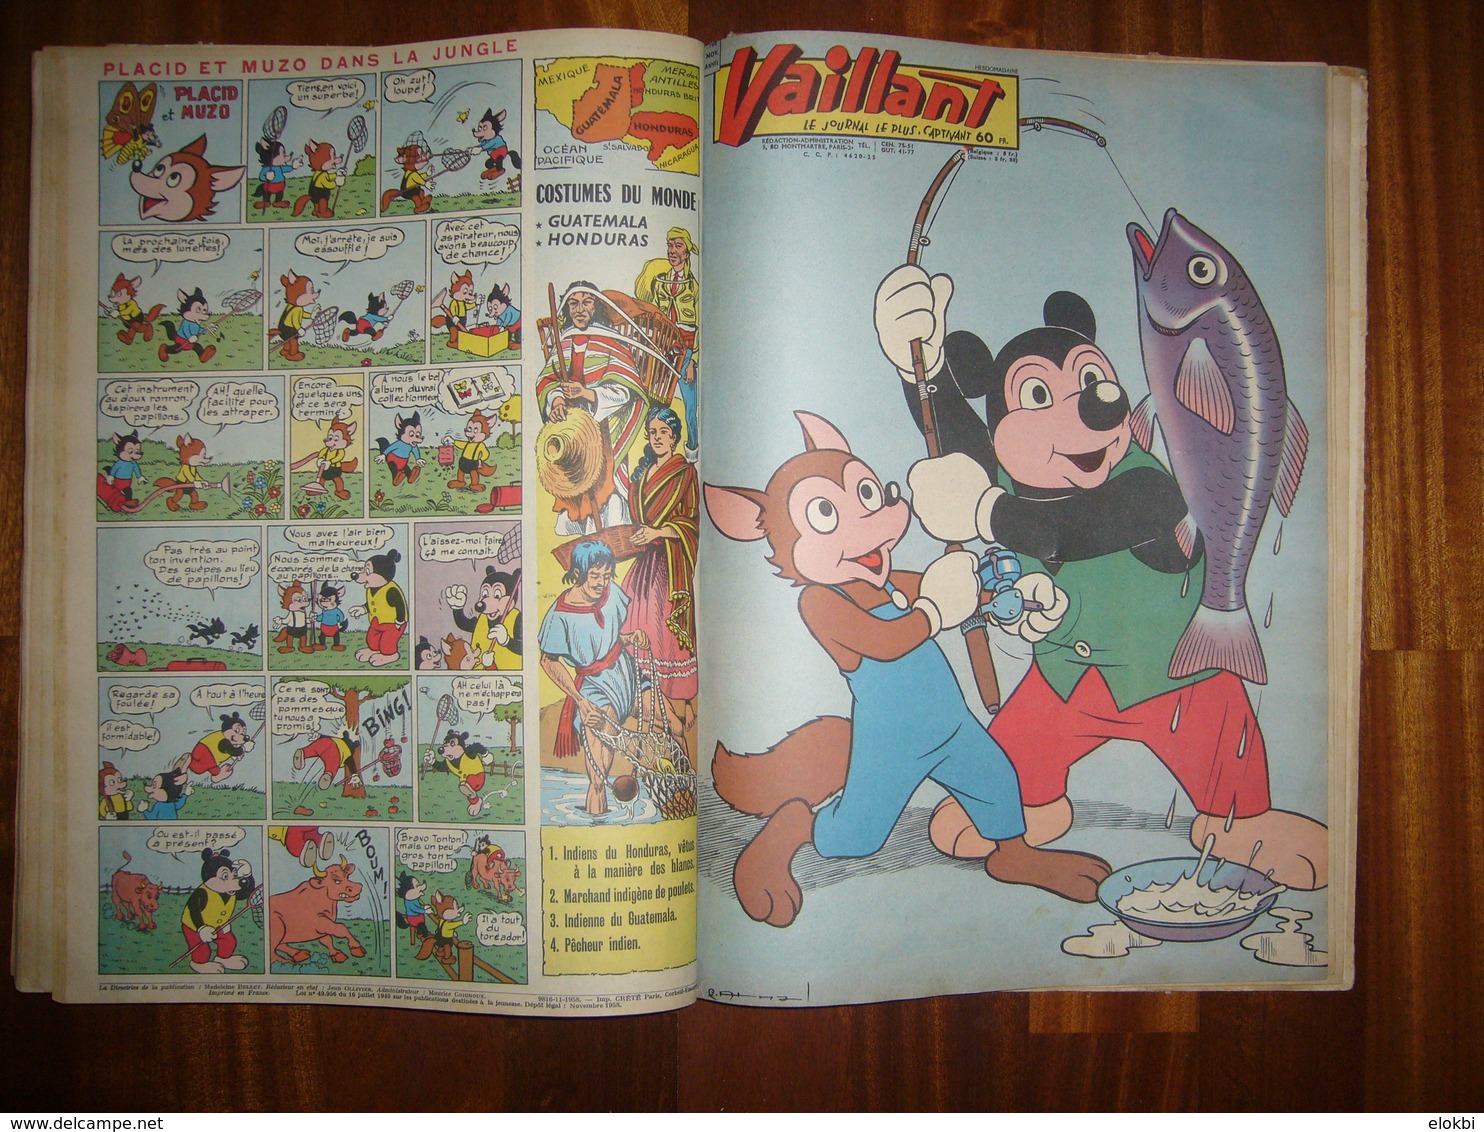 Album Vaillant n° 10 [Série n°2] Revues n° 695 à 707 incluses de l'année 1958 - Voir description détaillée